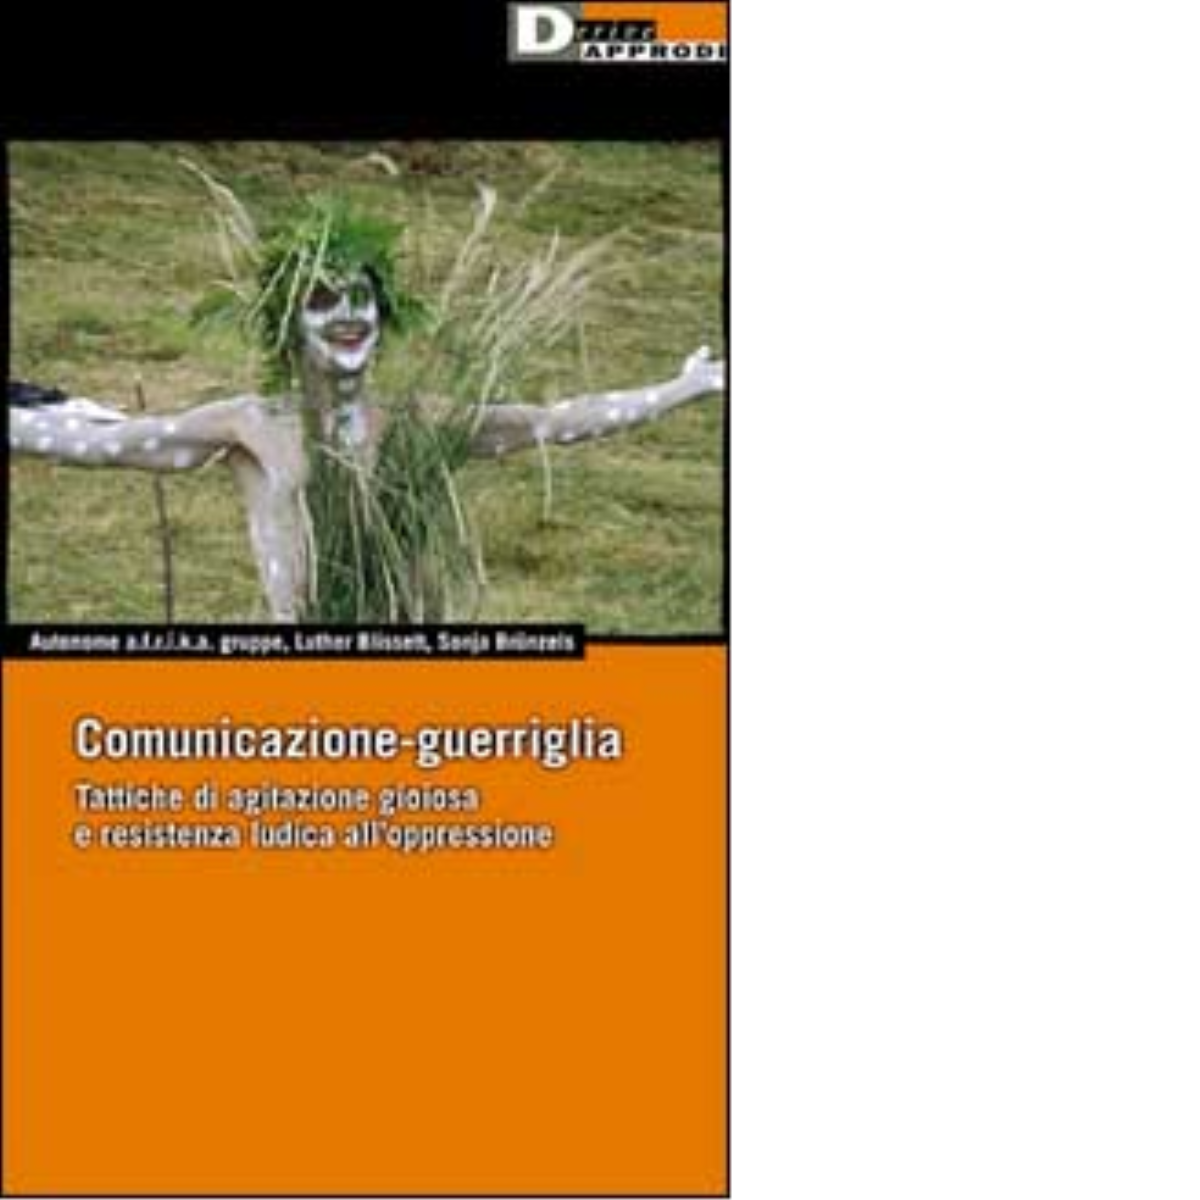 COMUNICAZIONE GUERRIGLIA - Luther Blissett, Sonja Br?nzels - DeriveApprodi,2001 libro usato